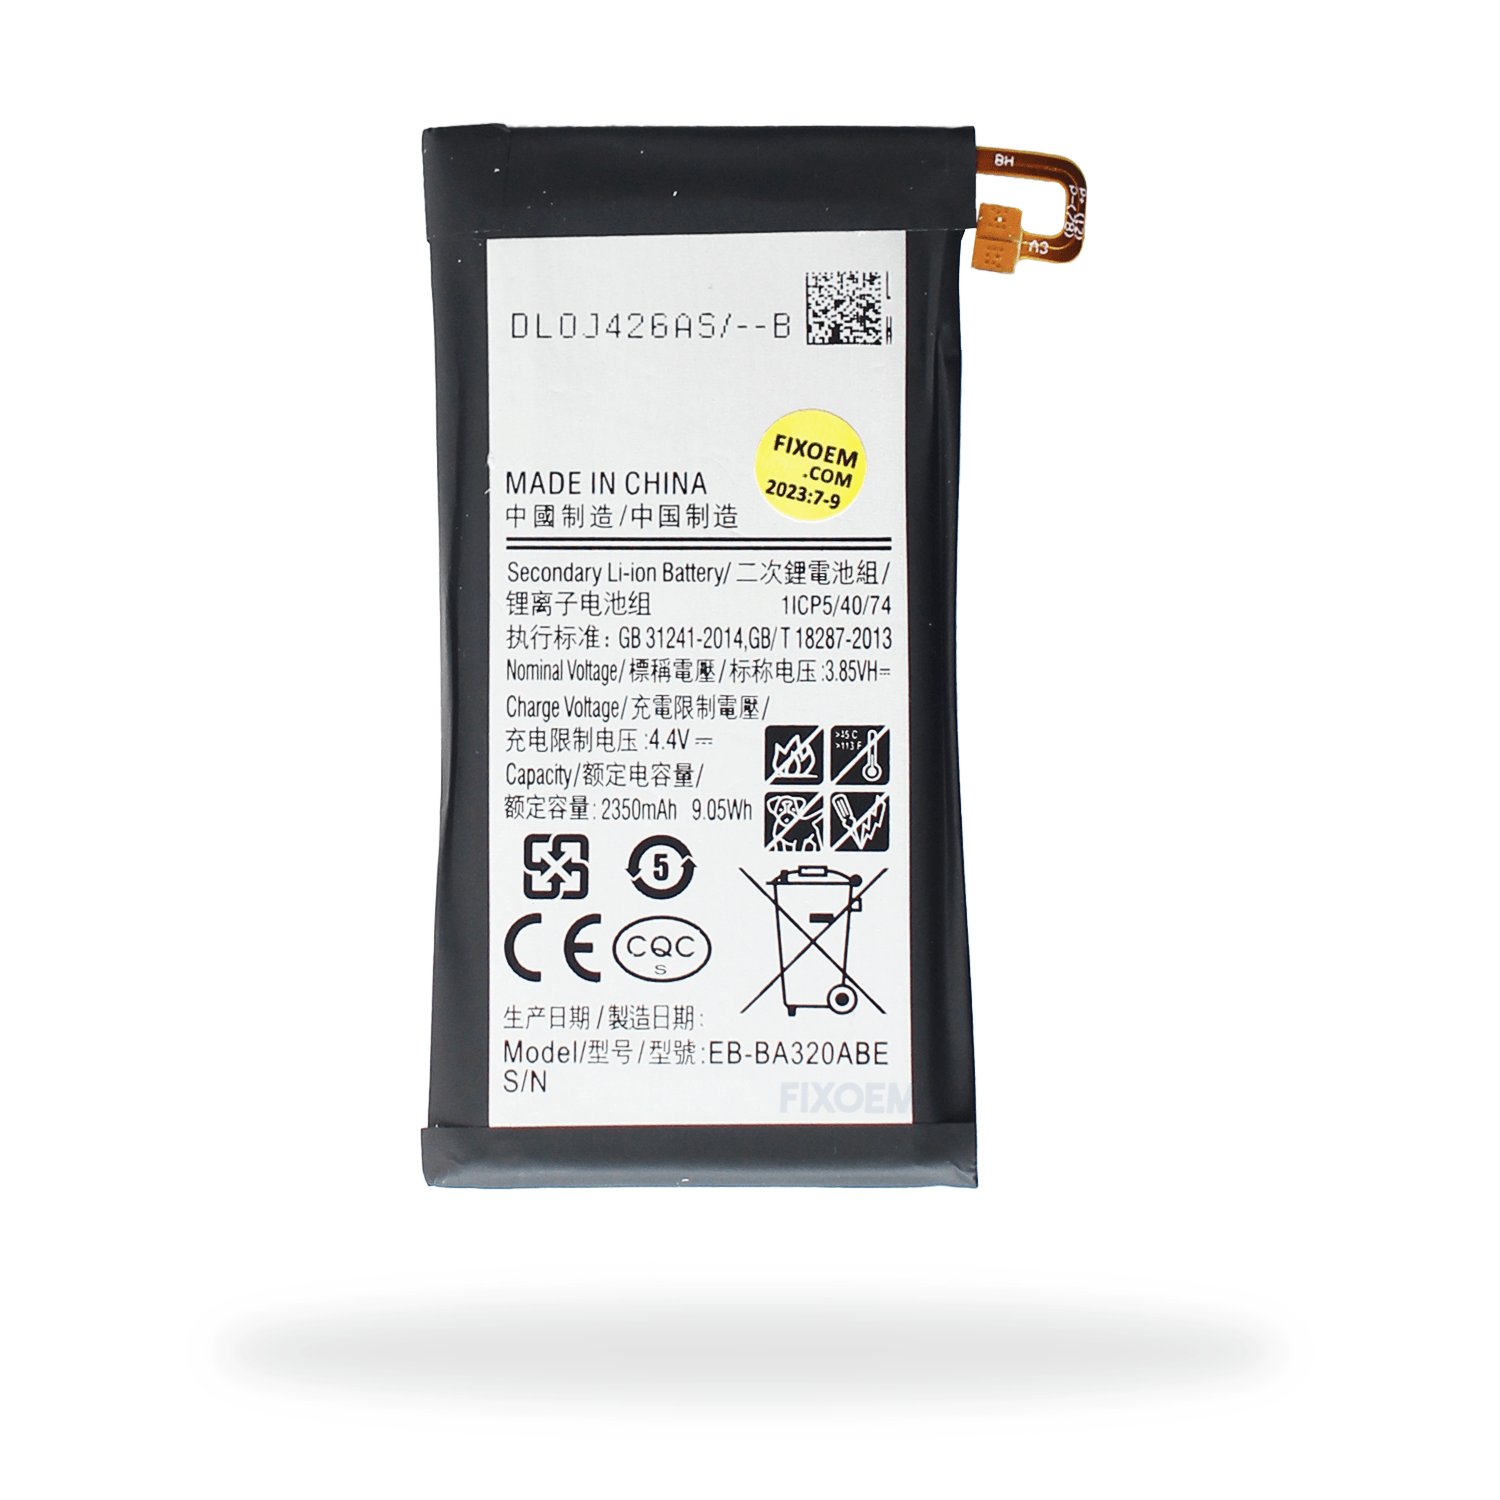 Bateria Samsung A3 2017 Sm-A320A. Eb-Ba320Abe a solo $ 140.00 Refaccion y puestos celulares, refurbish y microelectronica.- FixOEM